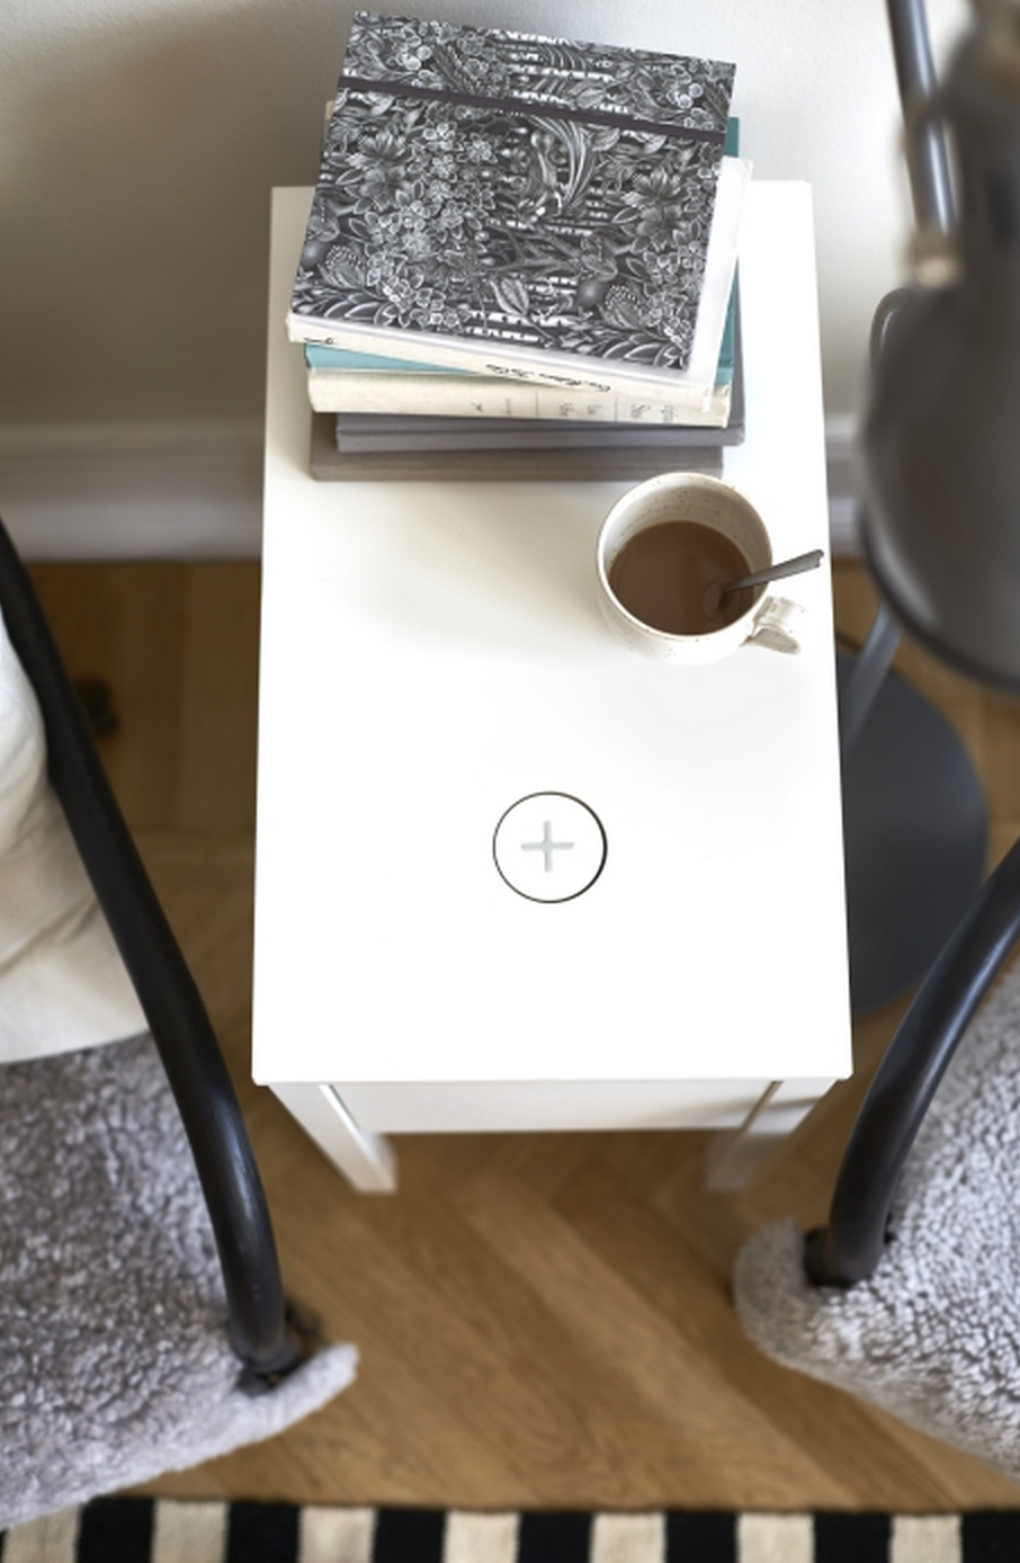 IKEA-Qi-wireless-charging-furniture-5.0